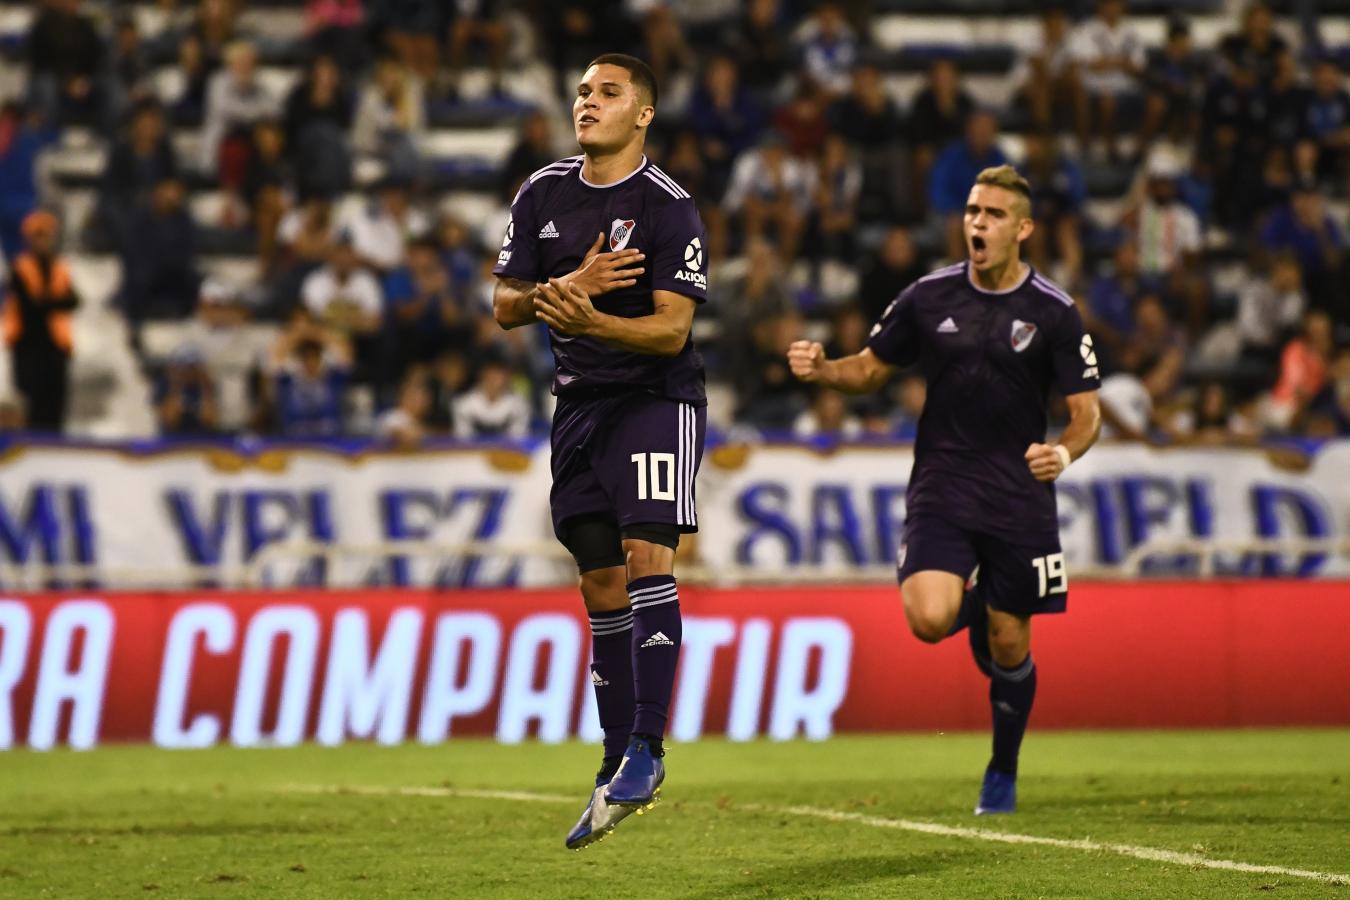 Imagen La noche del estreno de la 10 para Quintero, con gol de penal ante Vélez. River jugó con camiseta violeta en Liniers.